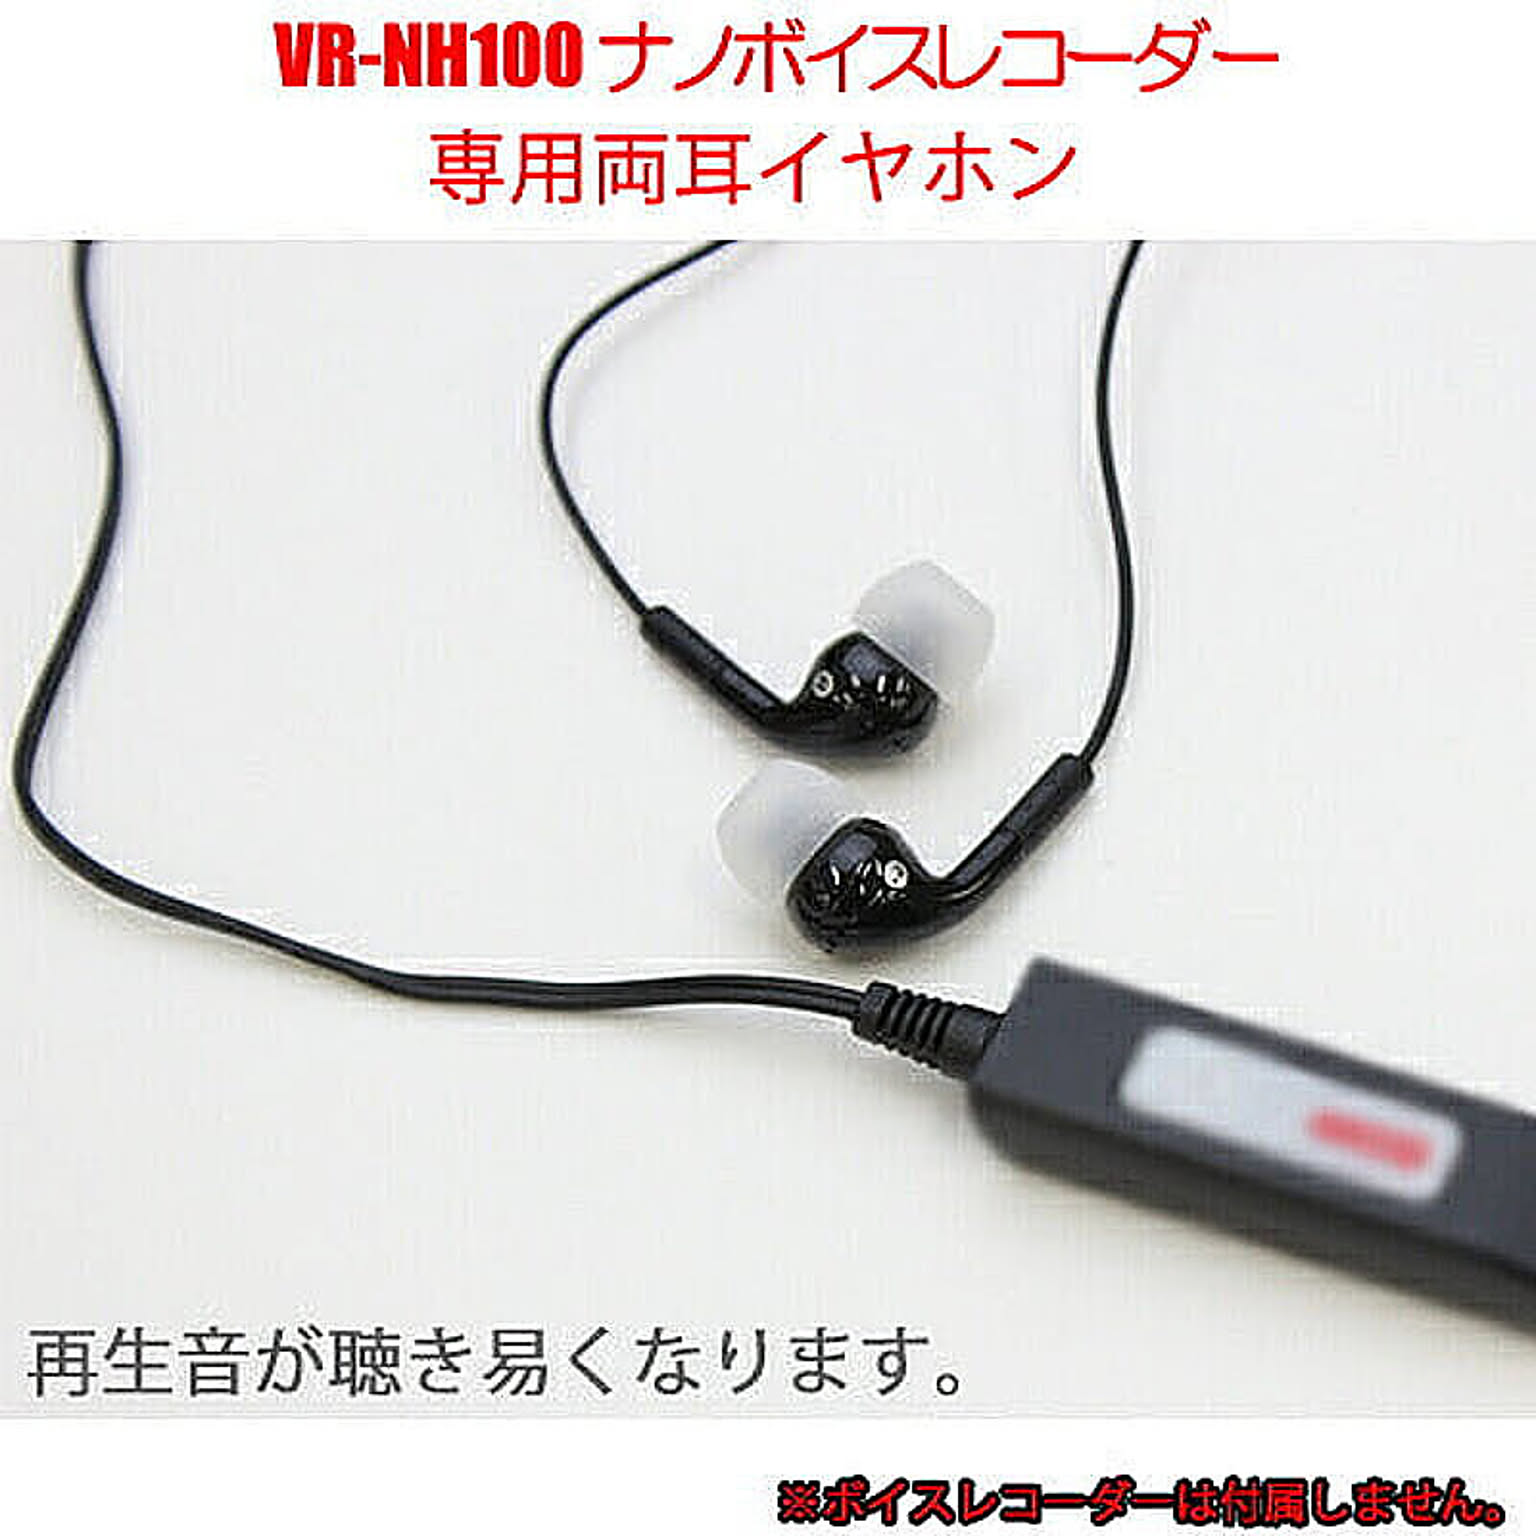 ベセトジャパン 再生音が聴き易くなるVR-NH100専用オプション両耳イヤホン EAR-NH100 管理No. 4562261453439